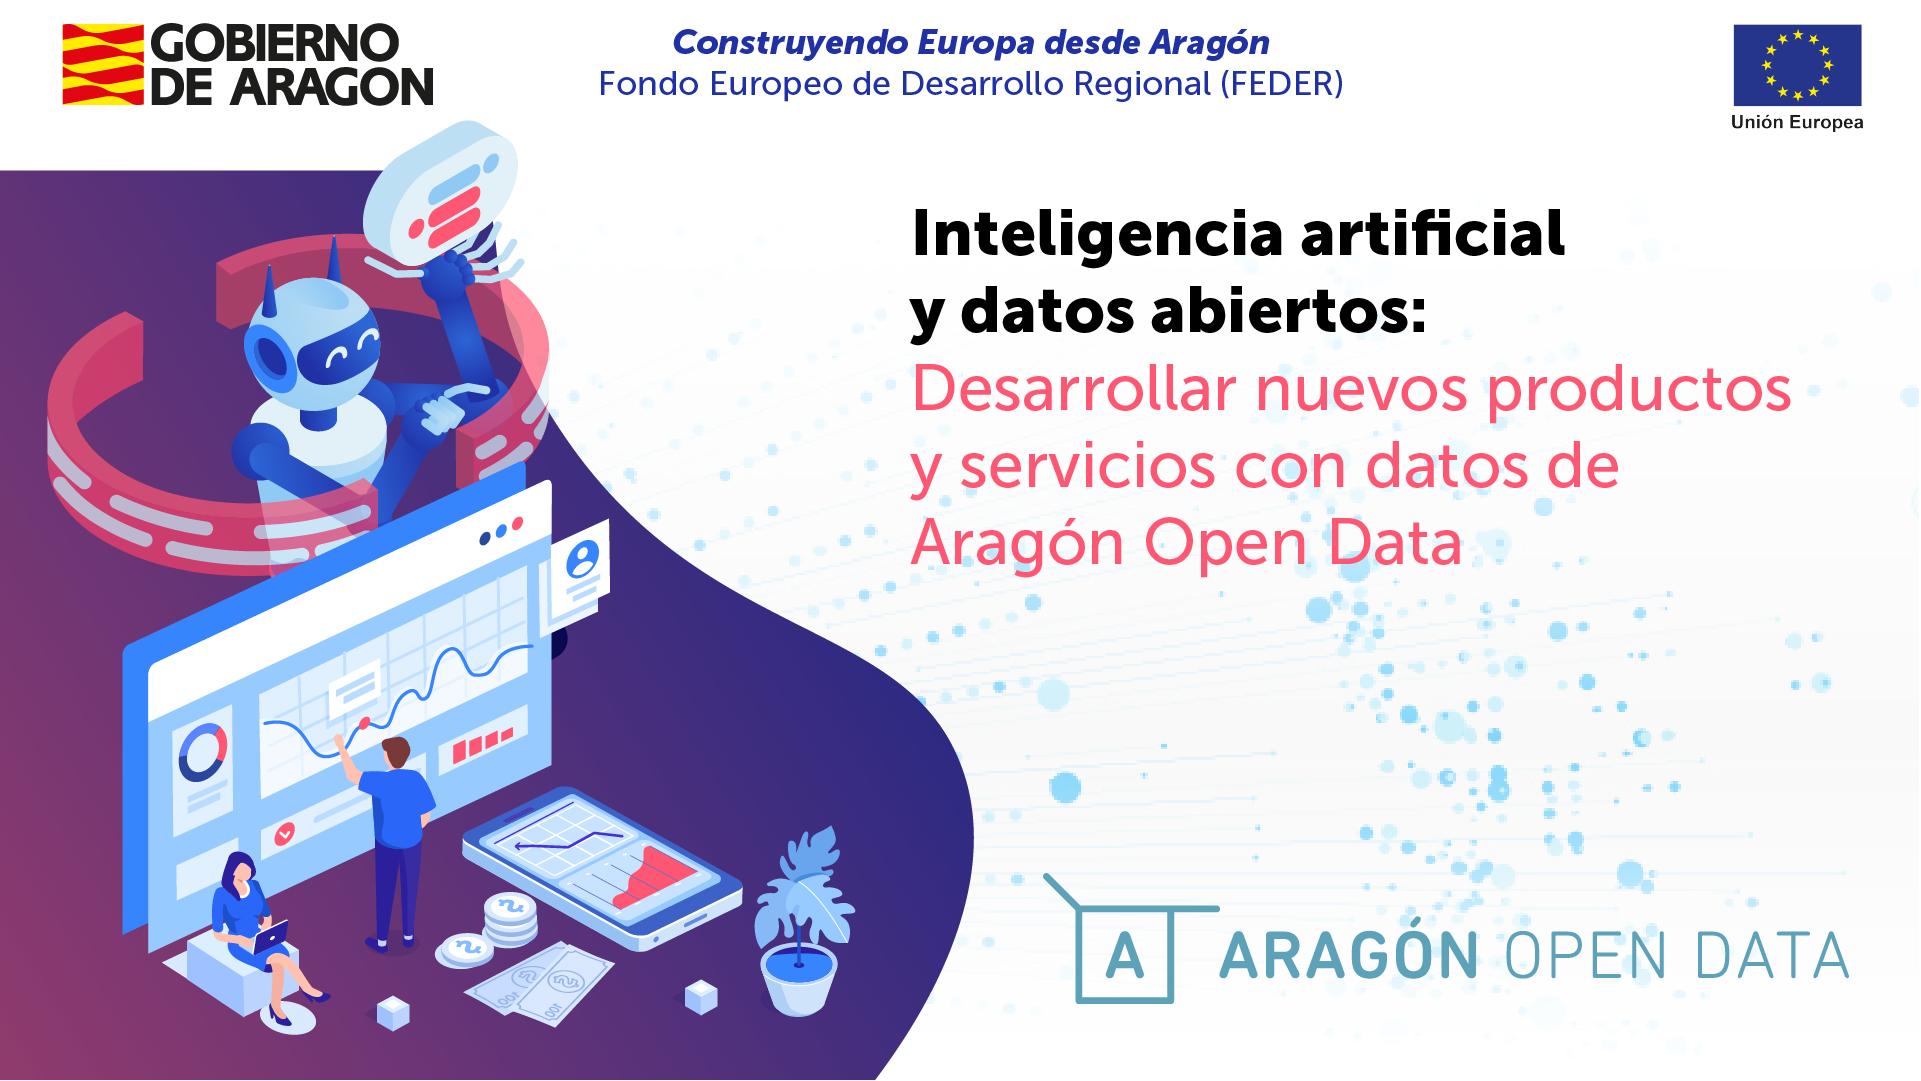 El portal Aragón Open Data celebra dos jornadas dirigidas a ciudadanos y empresas sobre Inteligencia artificial y datos abiertos